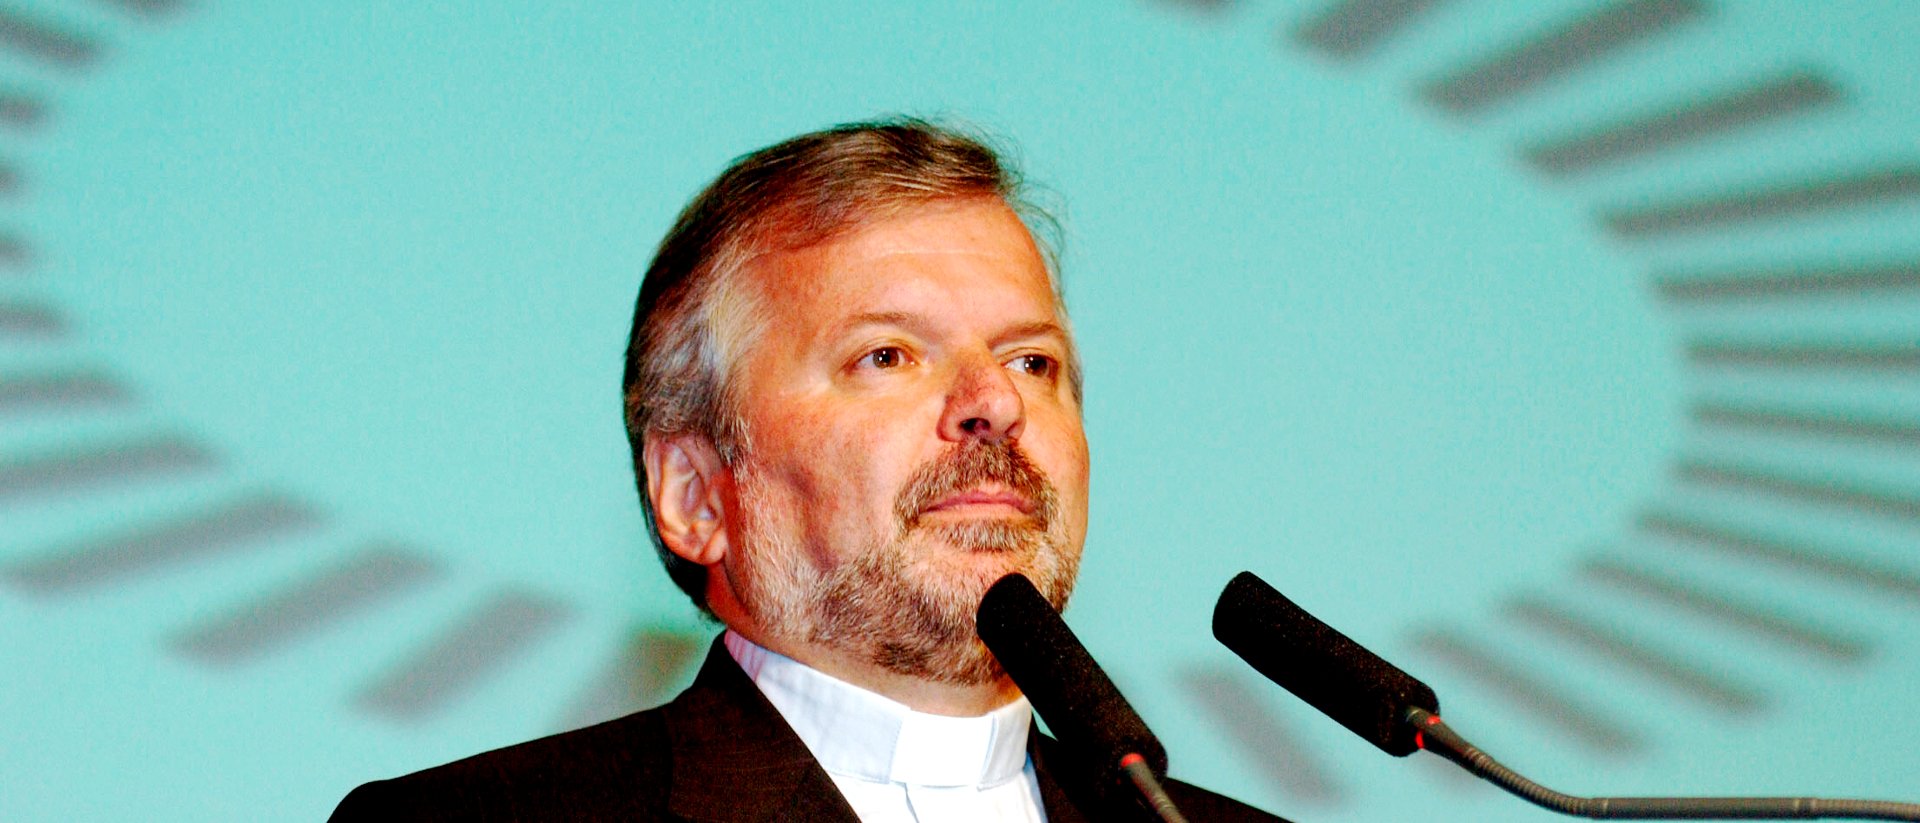 Aldo Giordano, Vatikandiplomat, in einer Aufnahme von 2003. Da war er Generalsekretär des Rates der Europäischen Bischofskonferenzen (CCEE) in St. Gallen.